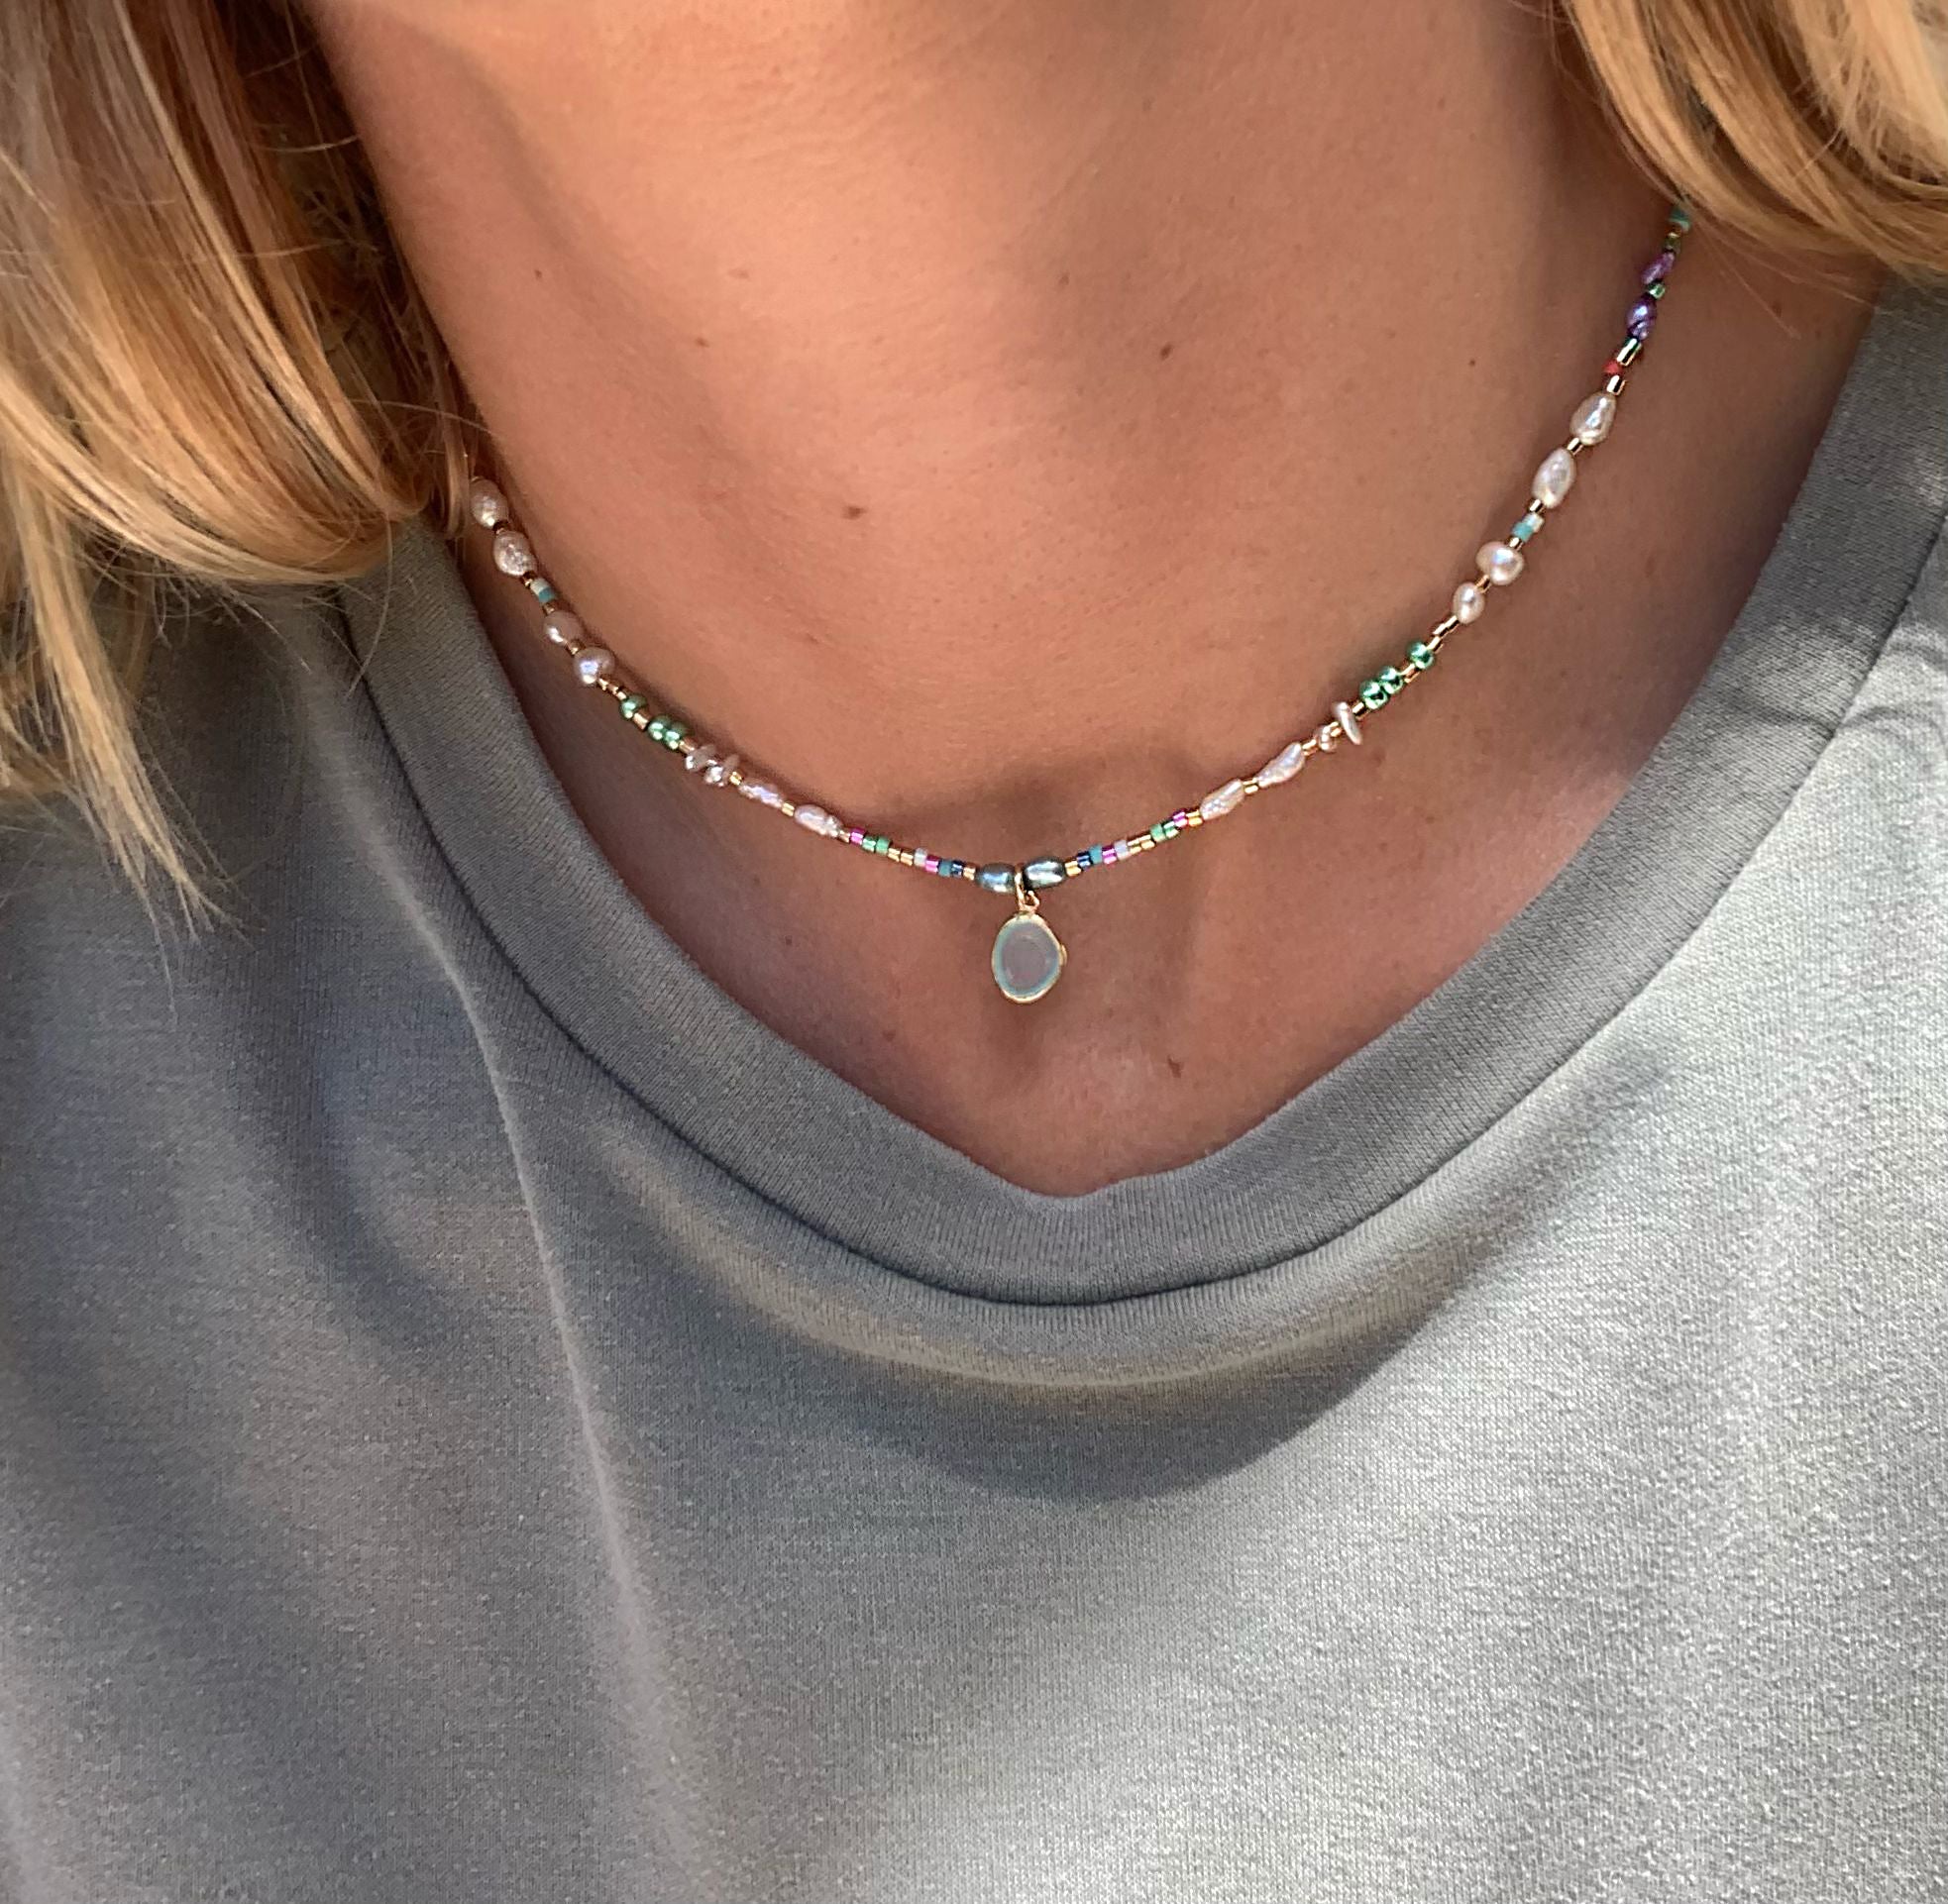 Sommerliche Halskette mit Süsswasser Perlen, bunten Glasperlen und einem echten Aqua Chalcedon Anhänger